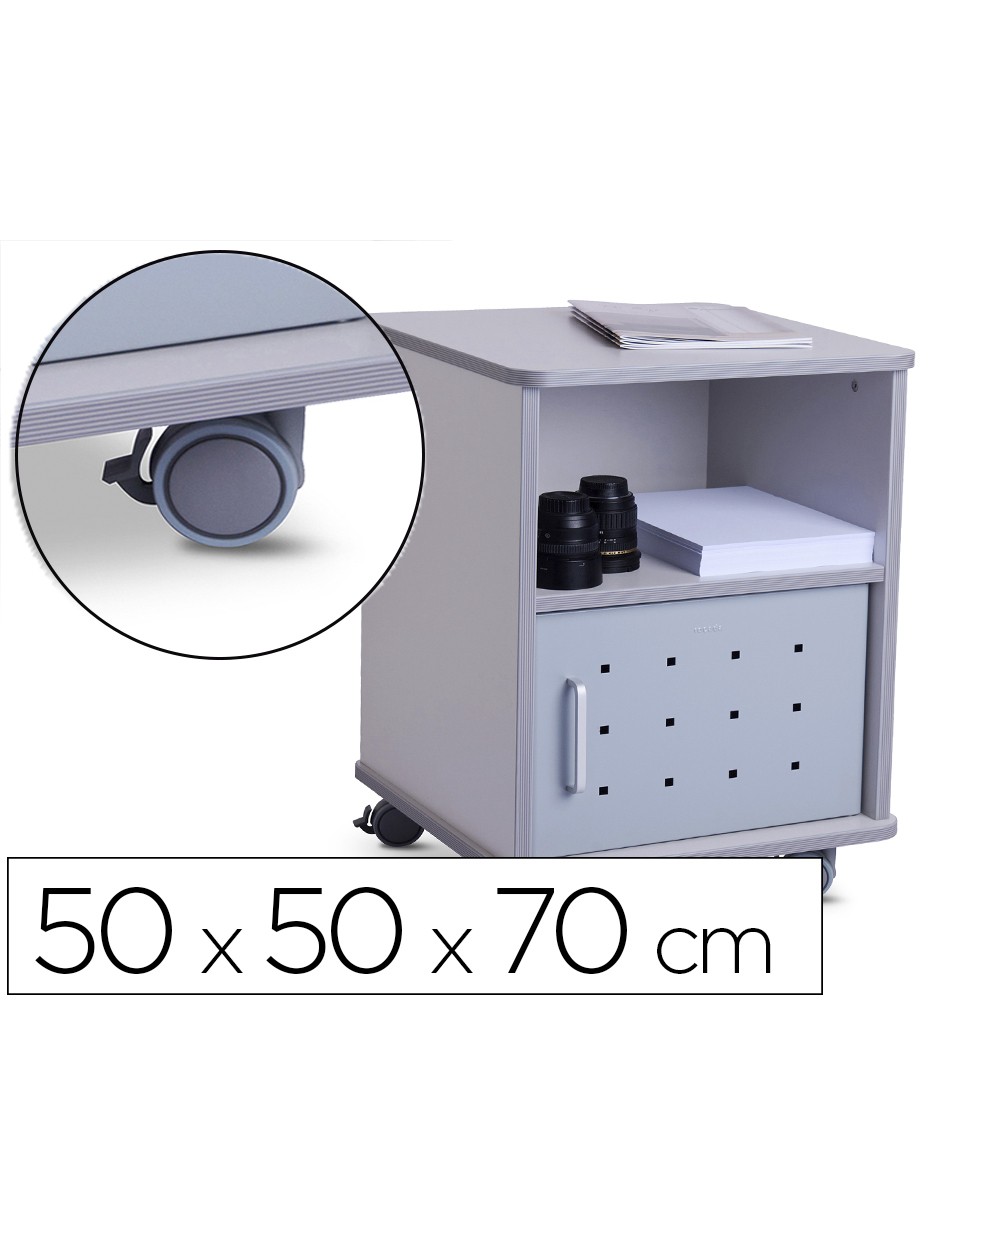 Mesa auxiliar rocada rd 4030 para fotocopiadoras fax melamina con ruedas y puerta metalica color gris 50x50x70